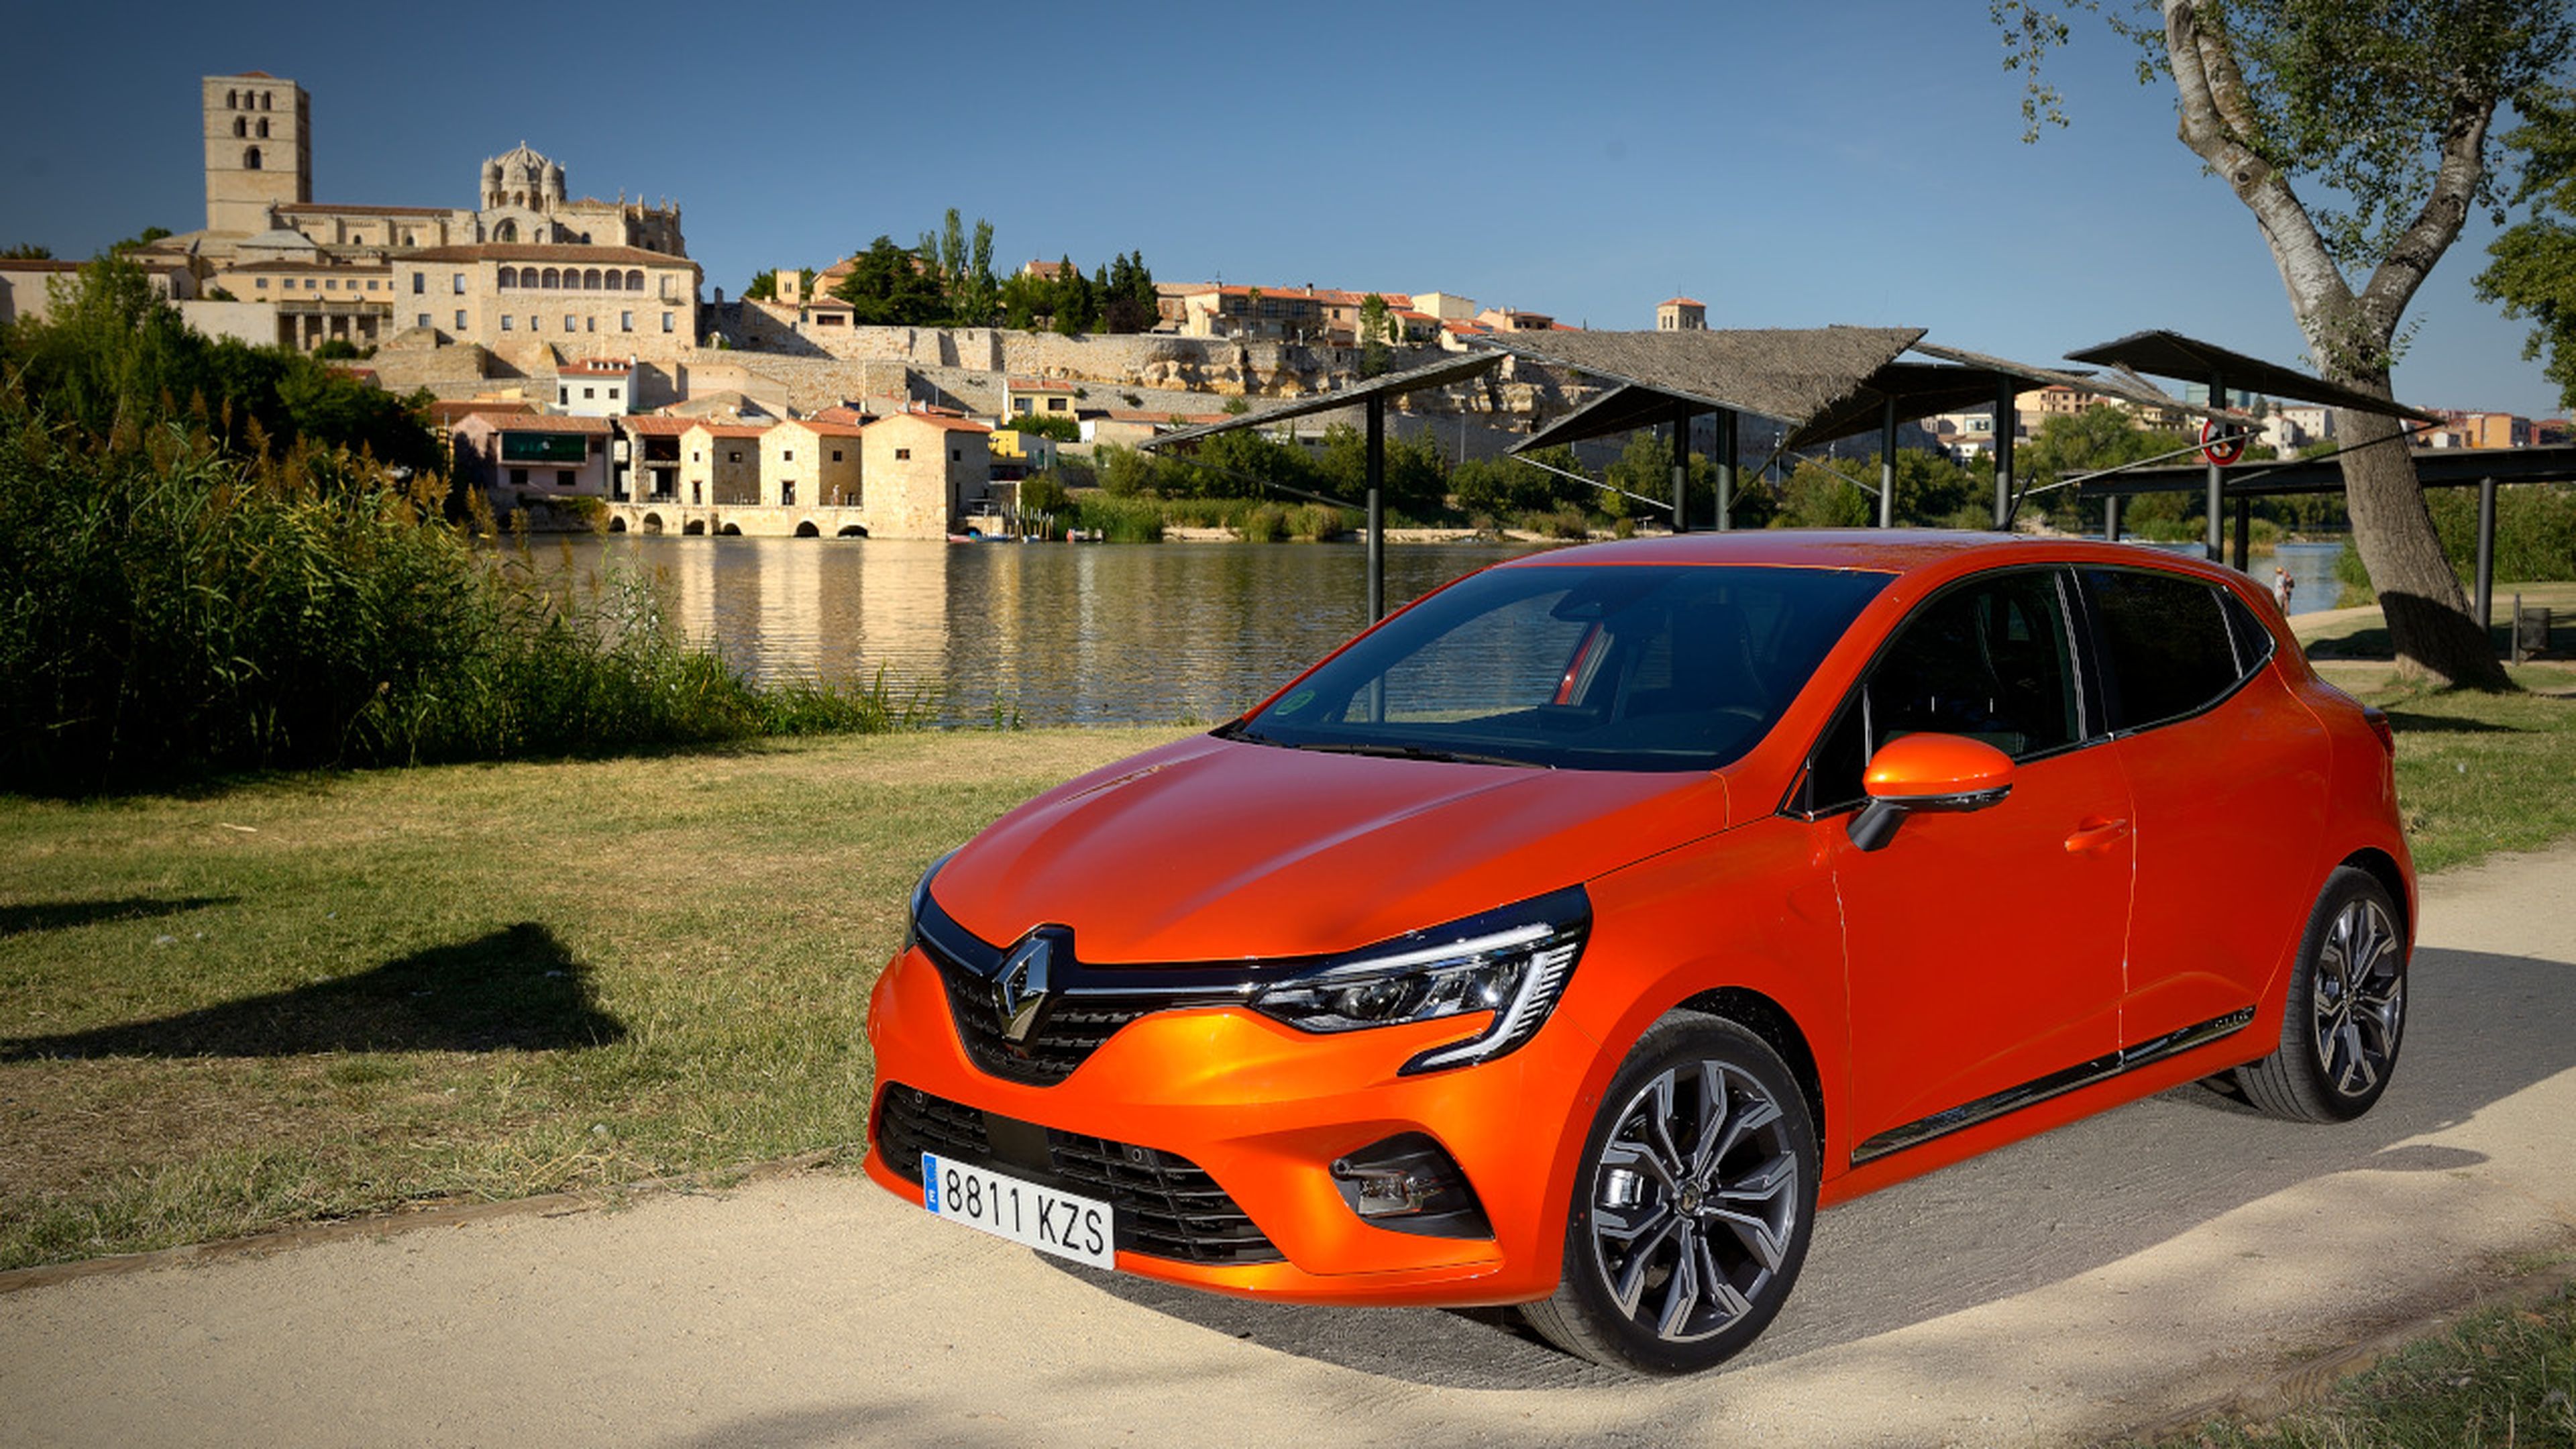 El nuevo Renault Clio 2019 posa delante de la ciudad de Zamora (Castilla y León).